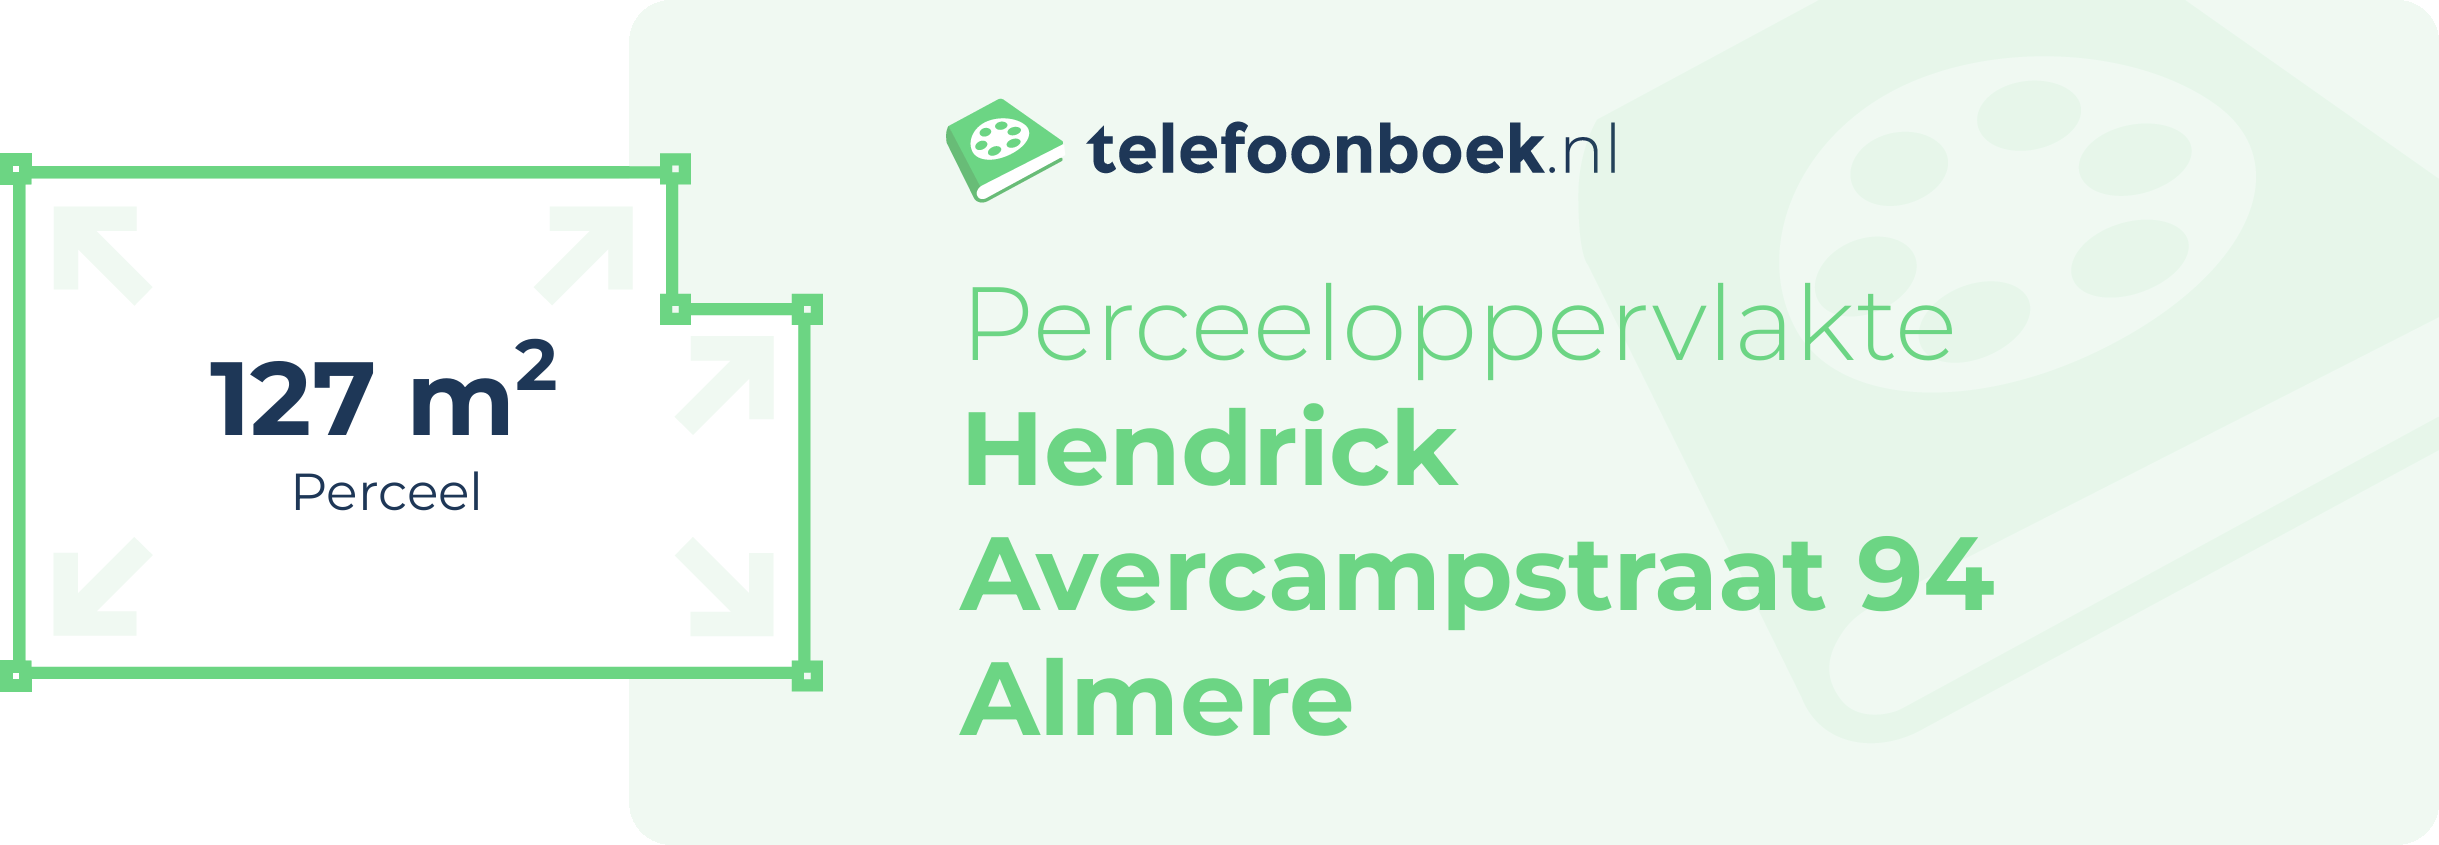 Perceeloppervlakte Hendrick Avercampstraat 94 Almere